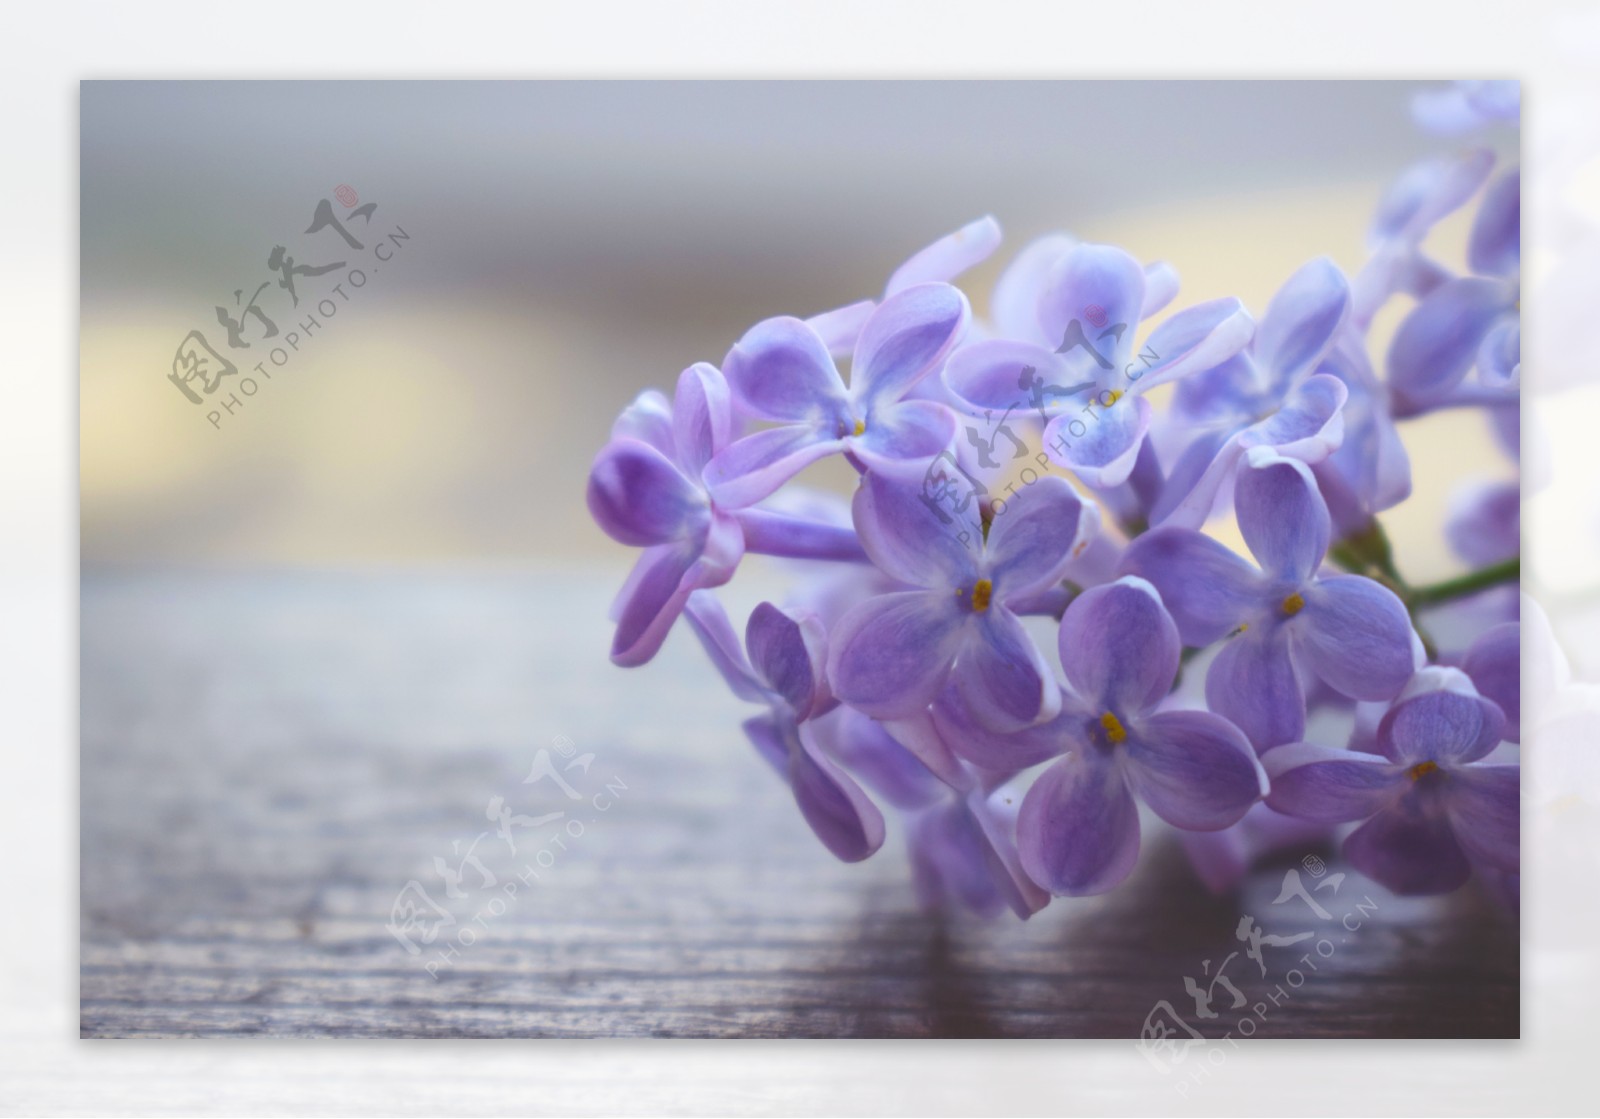 蓝紫色风信子花卉摄影